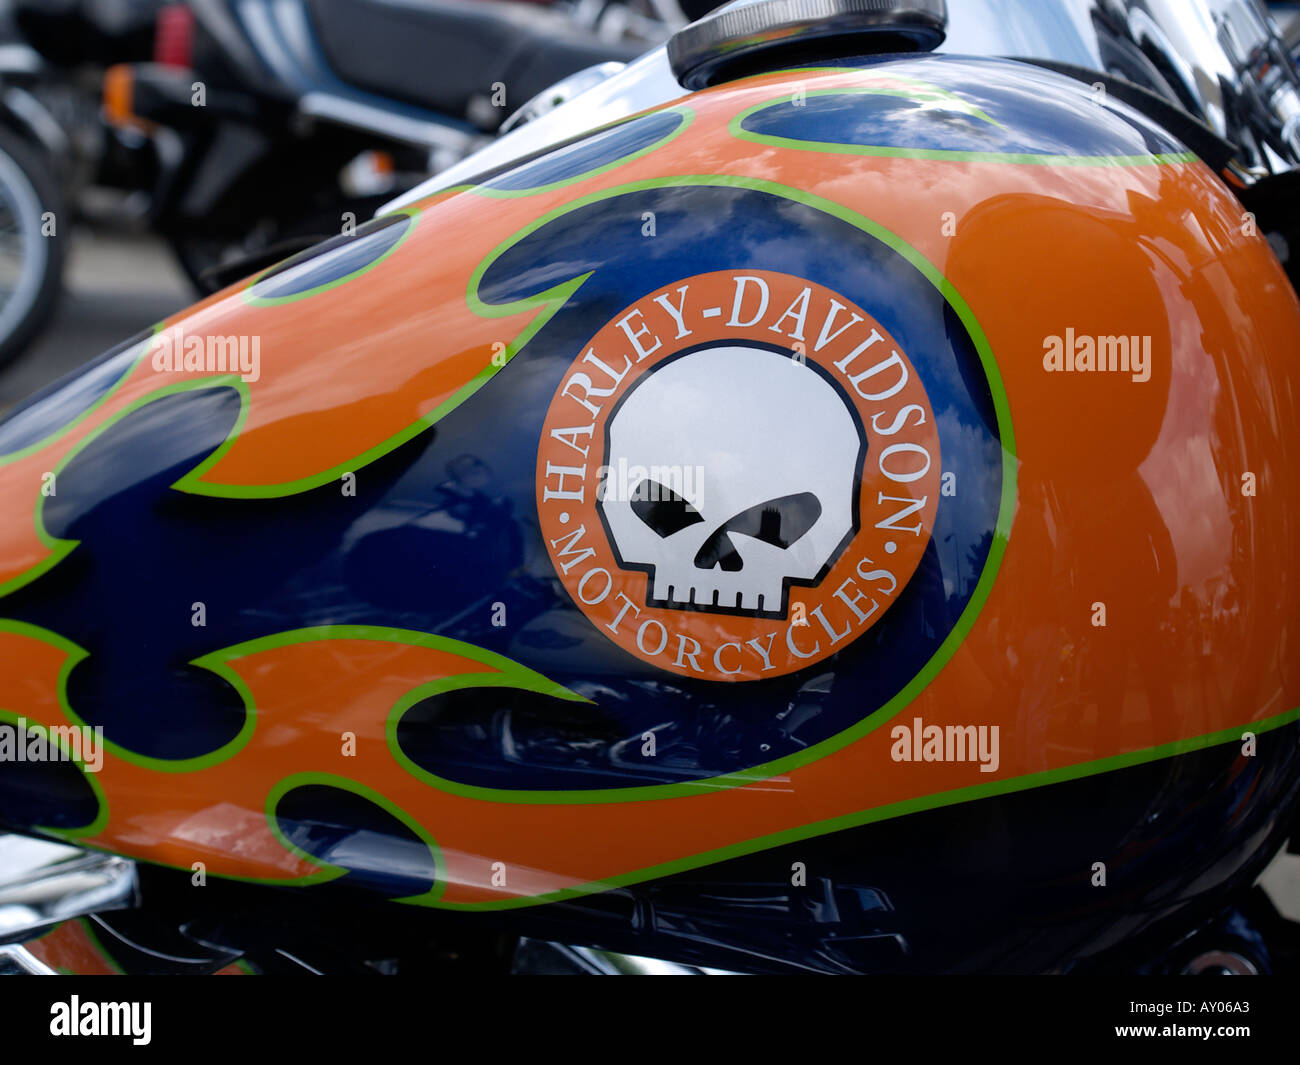 Nahaufnahme von einem Motorrad Tankdeckel mit dem Harley Davidson Logo auf  einer Versammlung der amerikanischen Motorräder in Beaucaire  Stockfotografie - Alamy